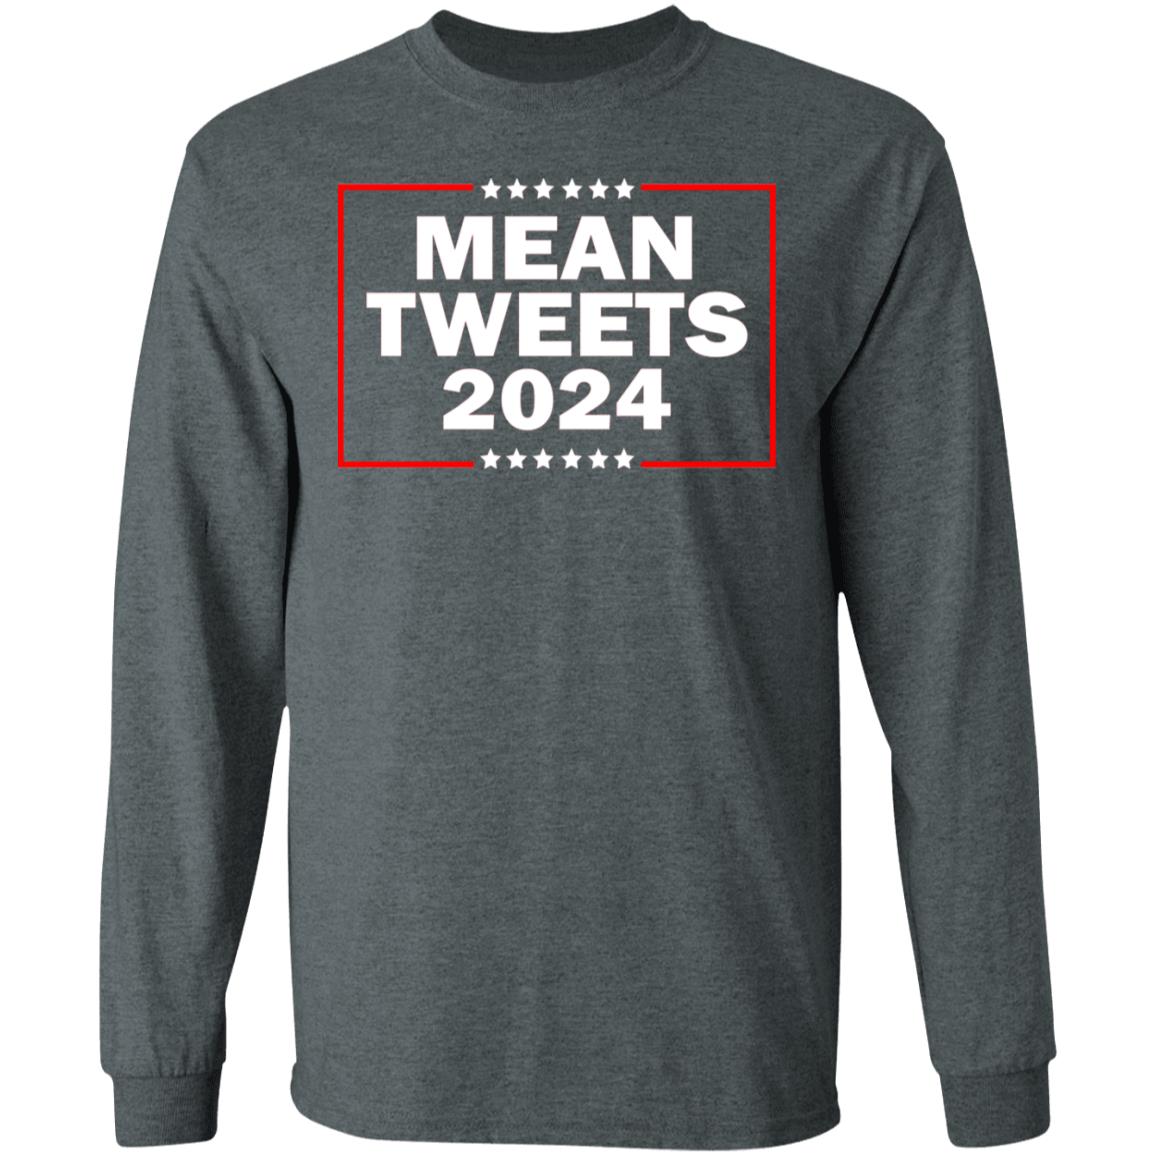 Mean Tweets 2024 Shirt, TShirt, Hoodie, Tank Top, Sweatshirt